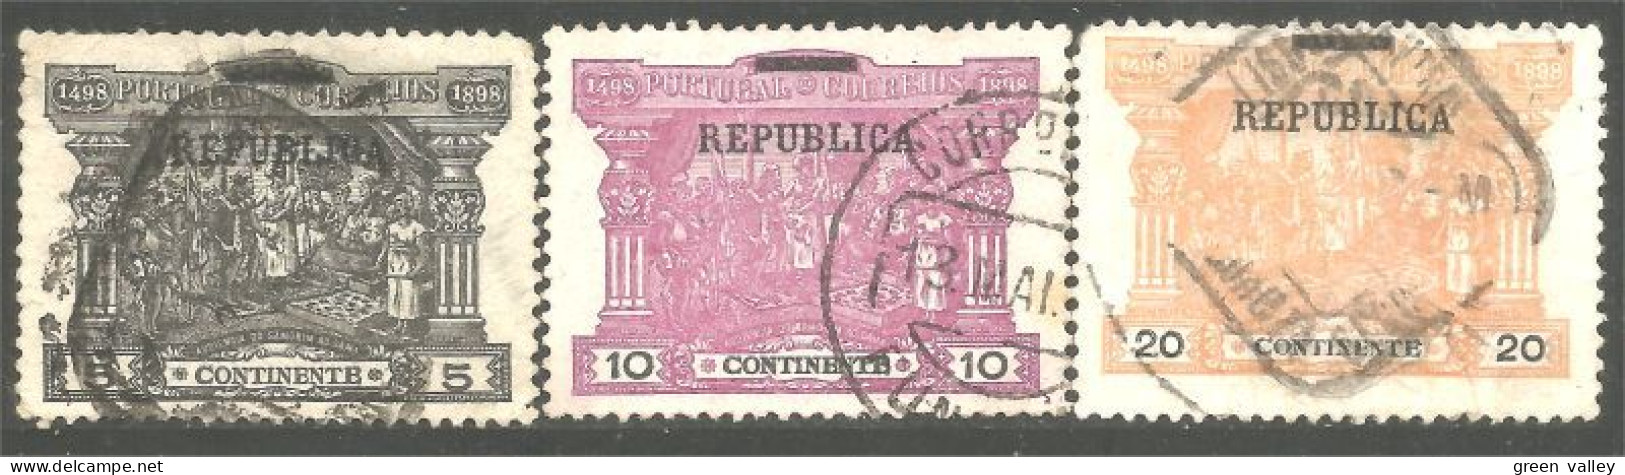 742 Portugal 1898 Postage Due Taxe (POR-135) - Usado